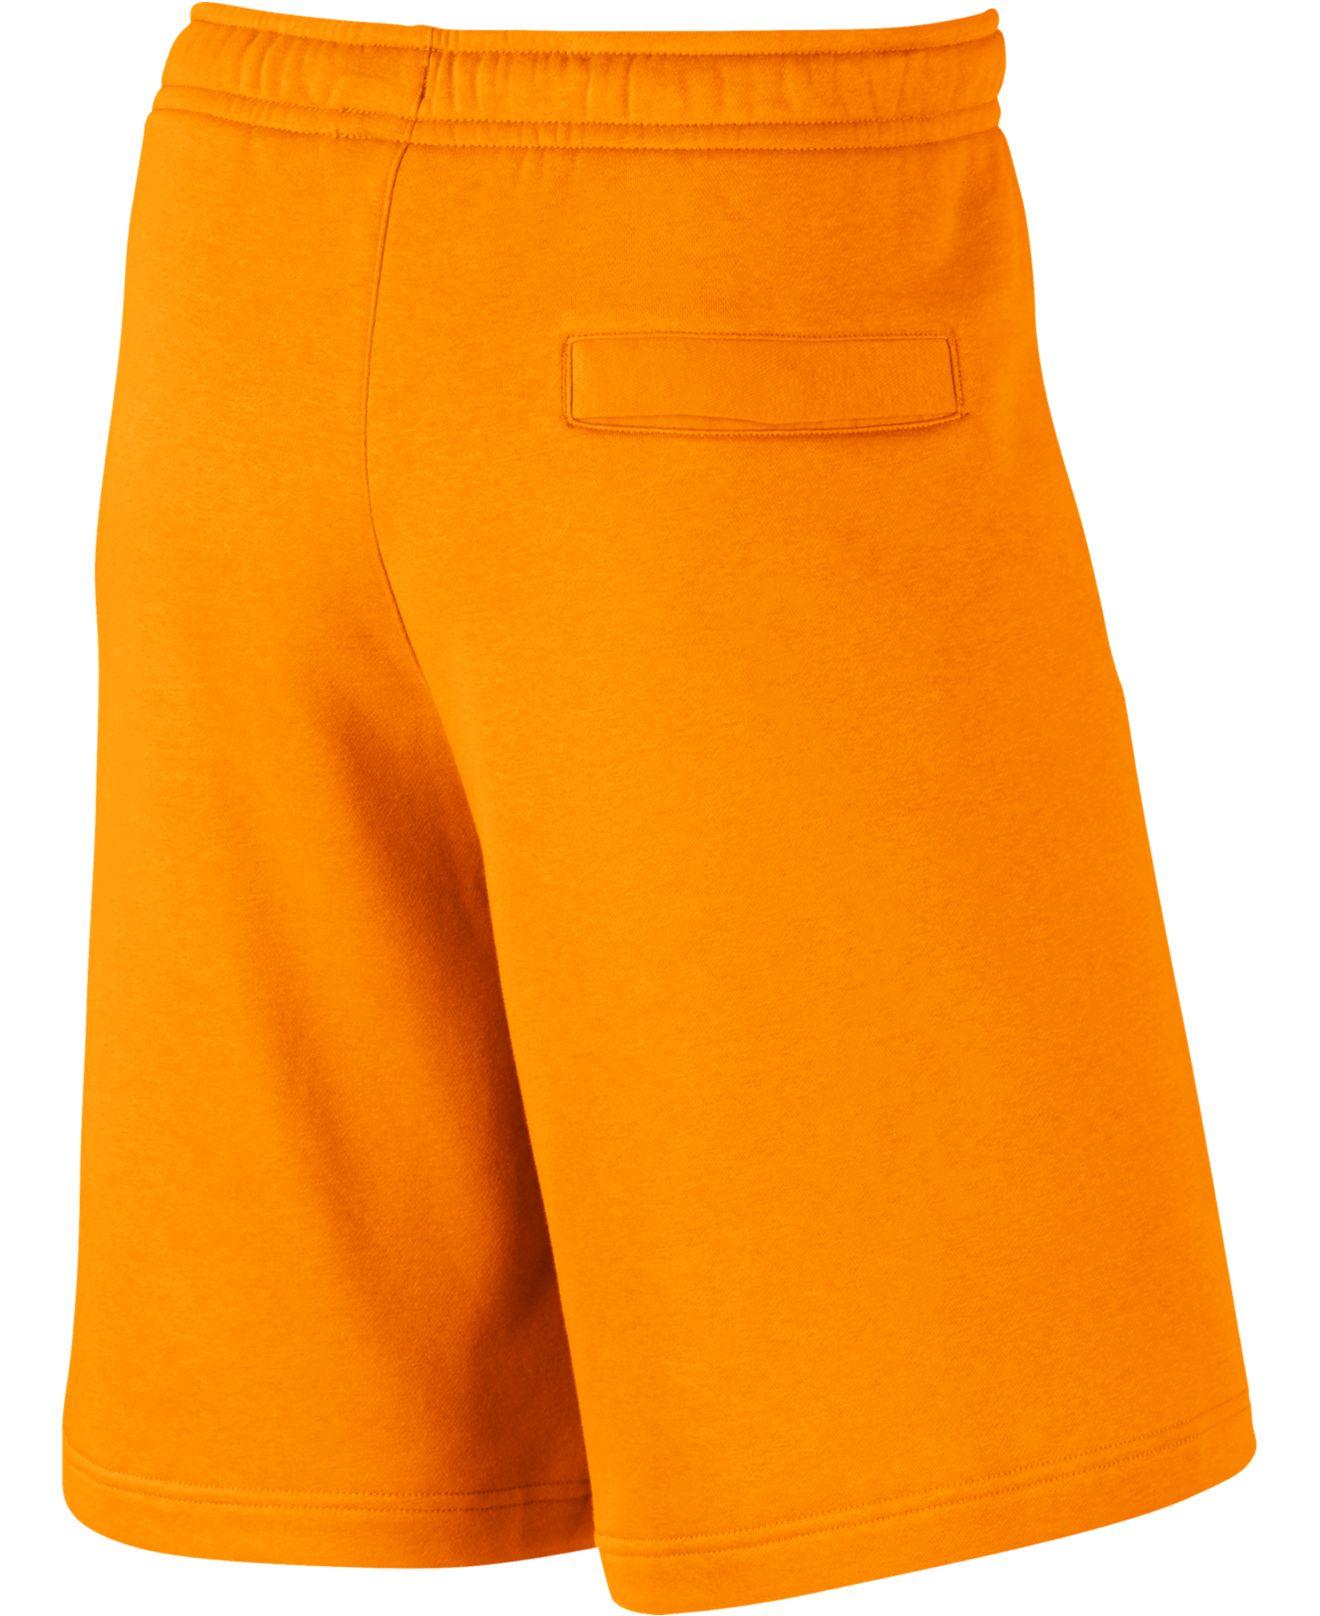 Nike Club Fleece Sweat Shorts in Orange for Men - Lyst